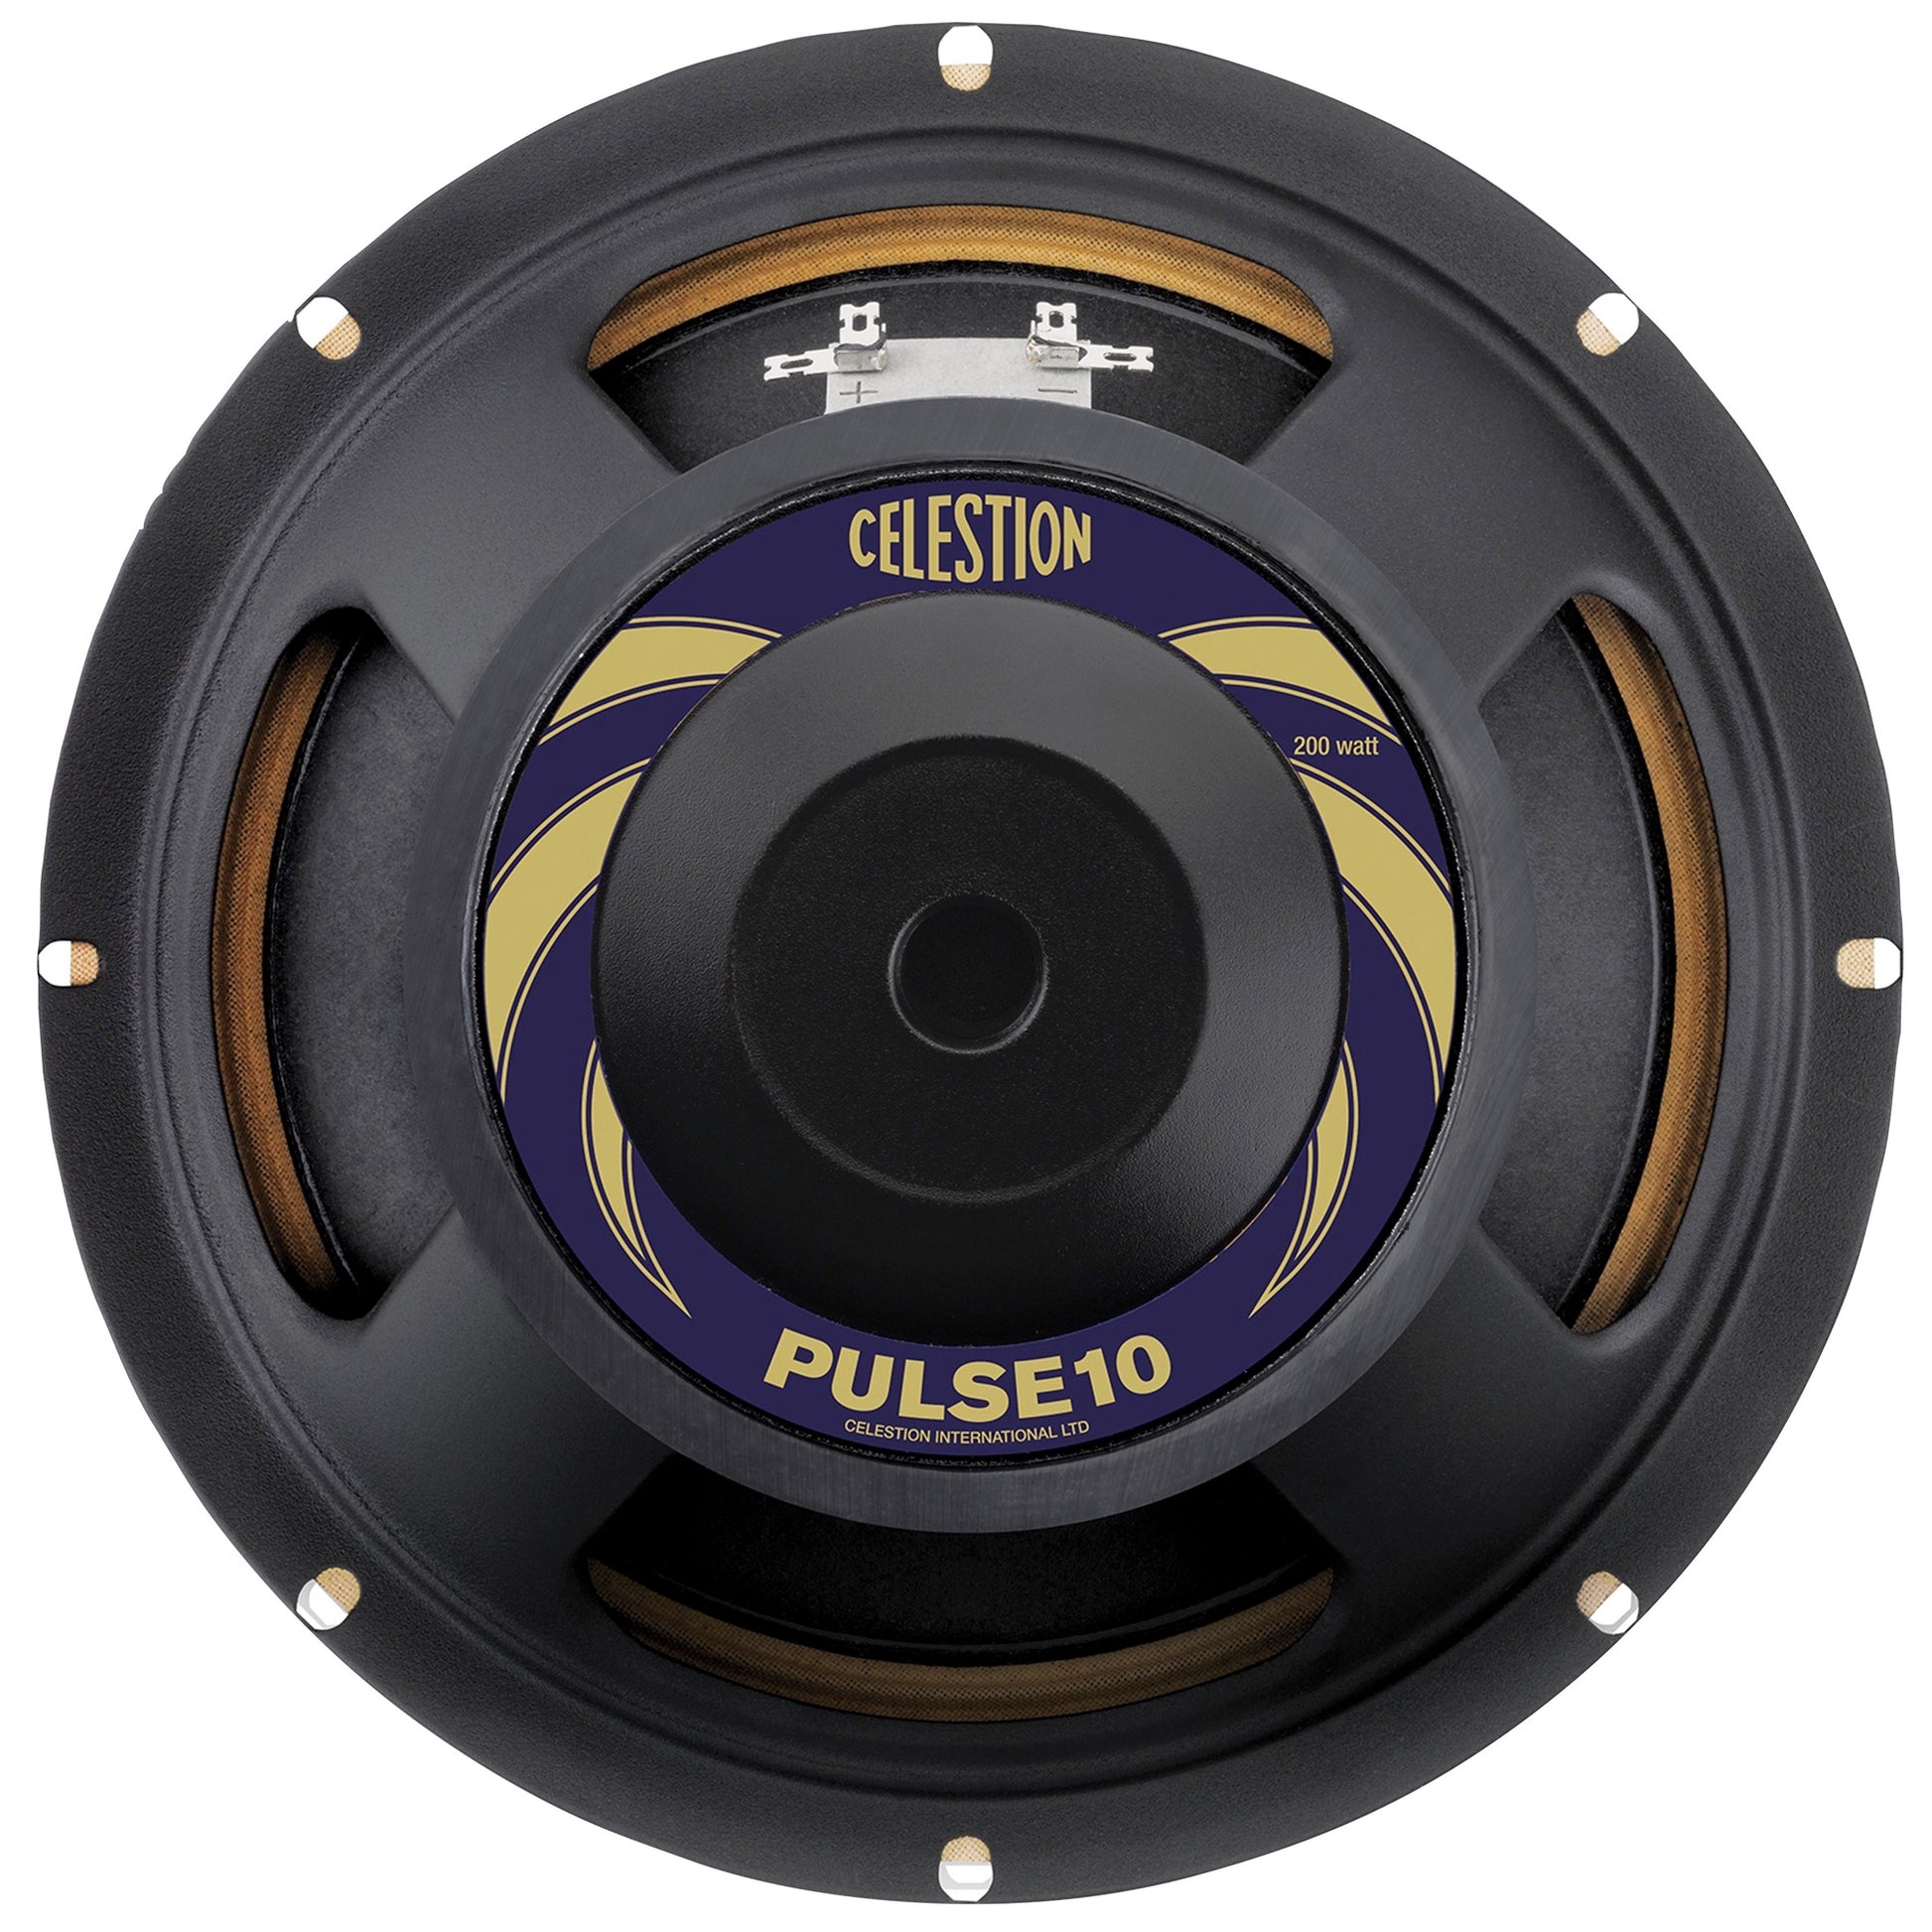 Celestion PULSE10 Bass Speaker (200 Watts, 10 Inch), 8 Ohms